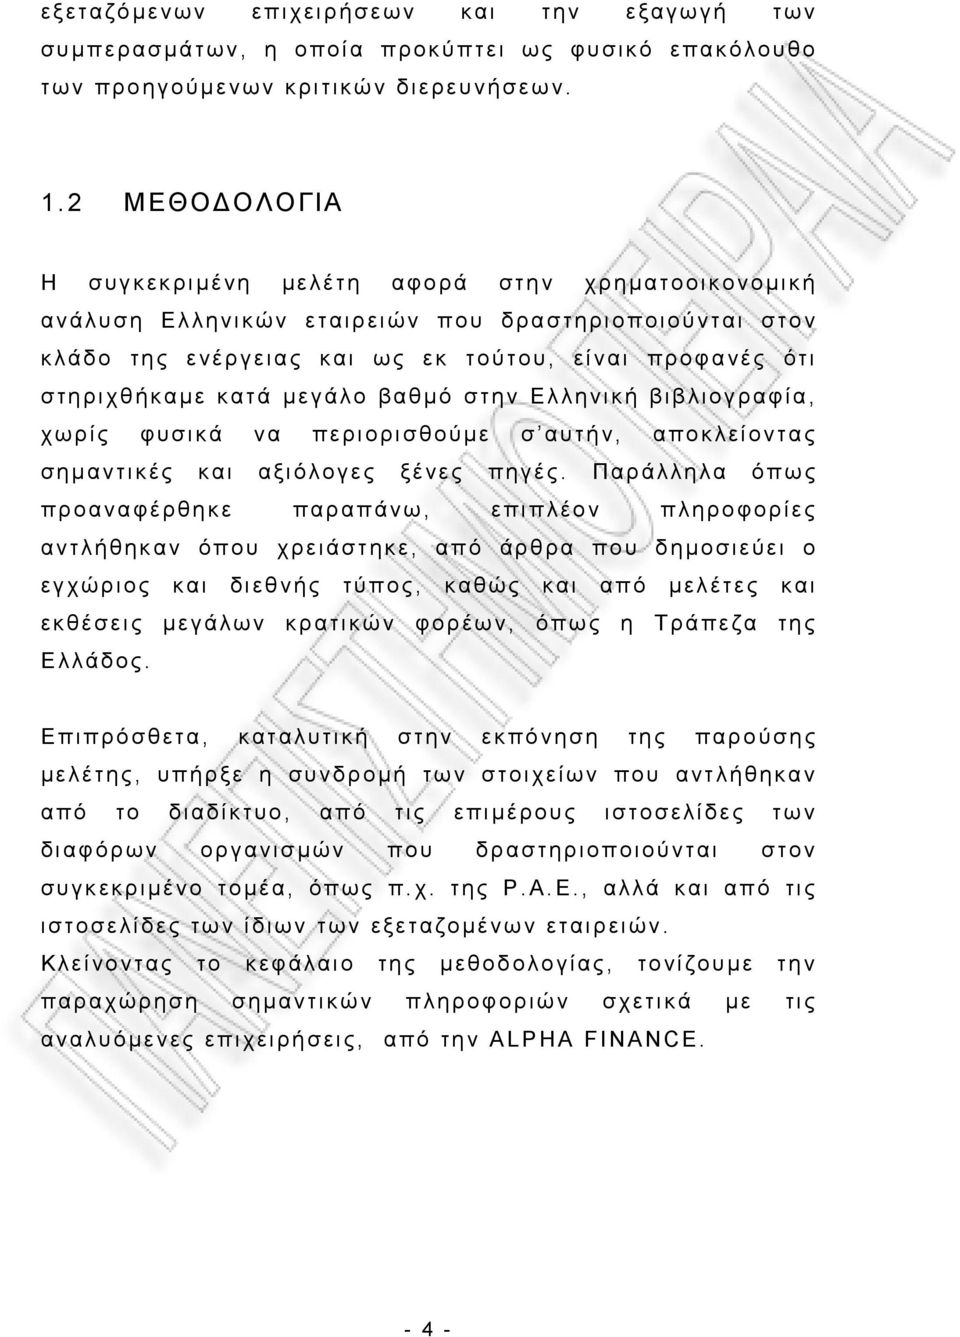 μεγάλο βαθμό στην Ελληνική βιβλιογραφία, χωρίς φυσικά να περιορισθούμε σ αυτήν, αποκλείοντας σημαντικές και αξιόλογες ξένες πηγές.